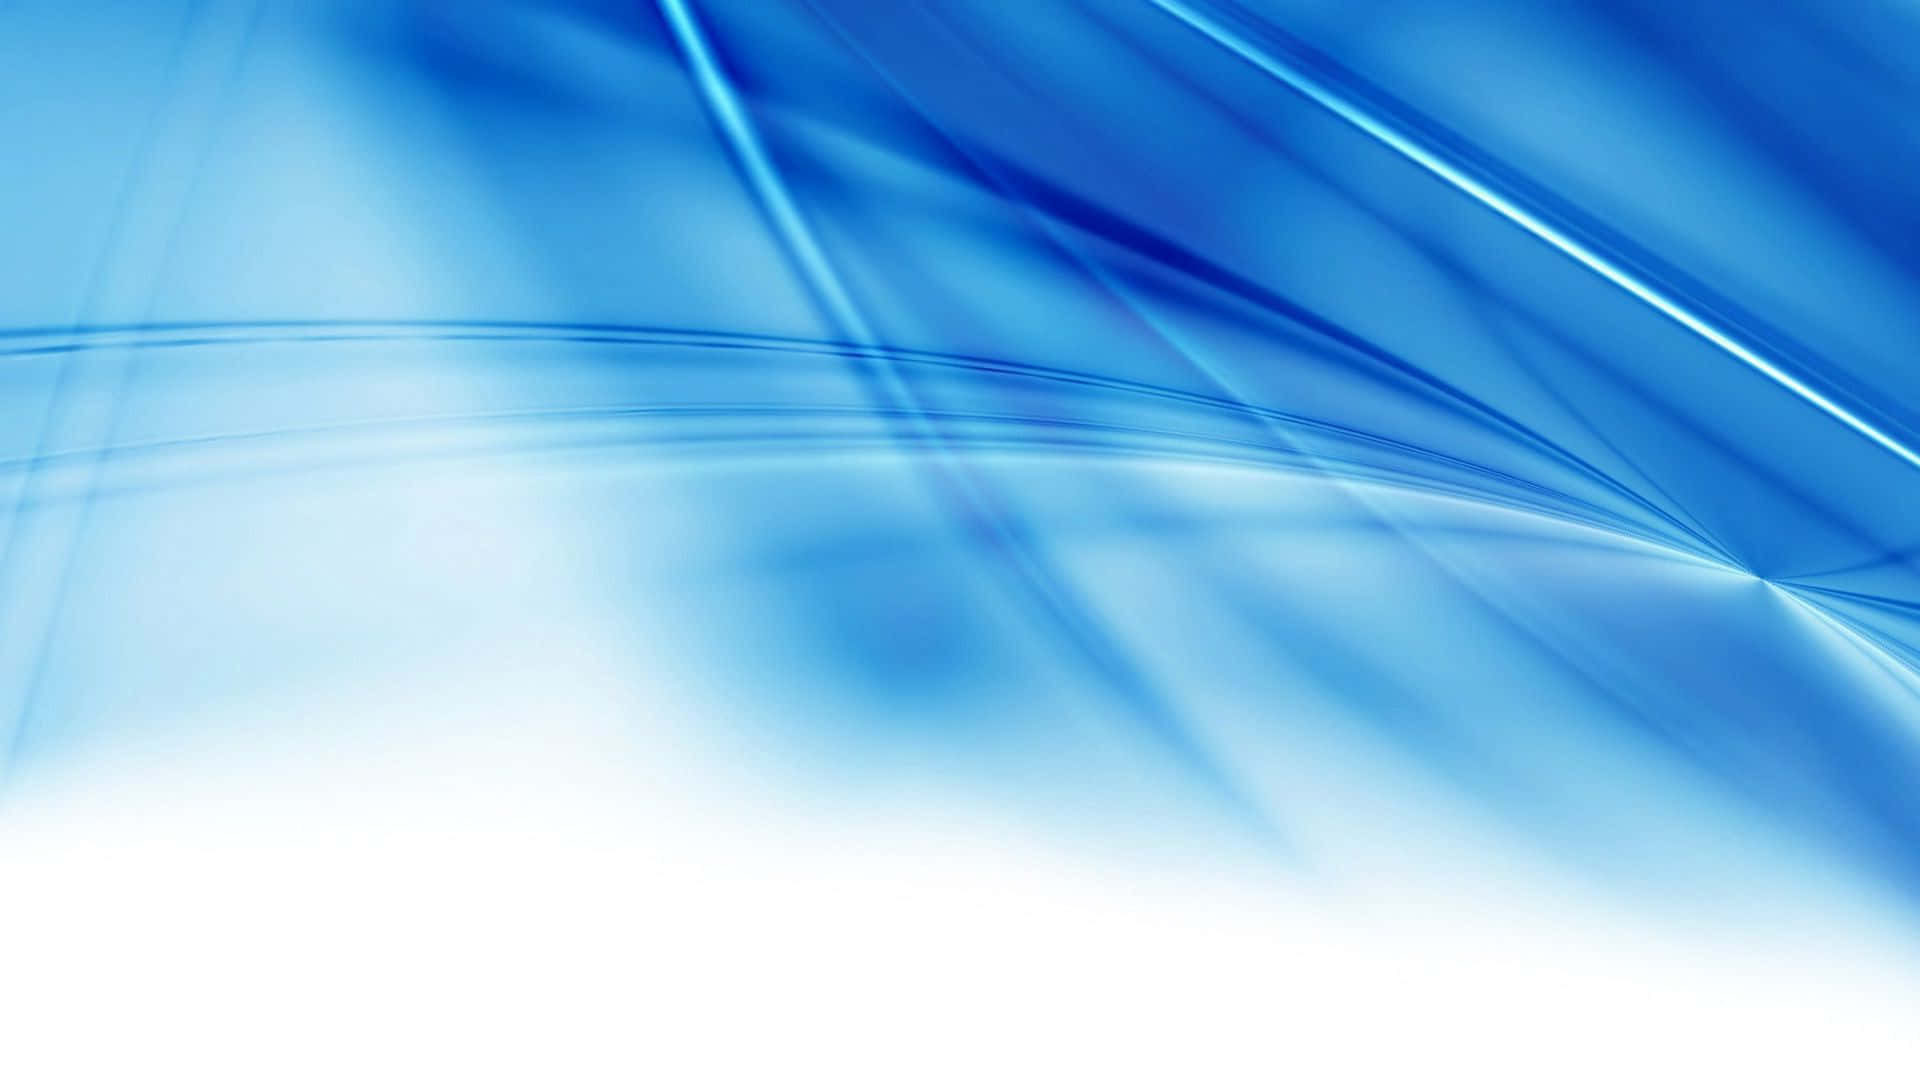 Image  Illuminating Blue Abstract Background